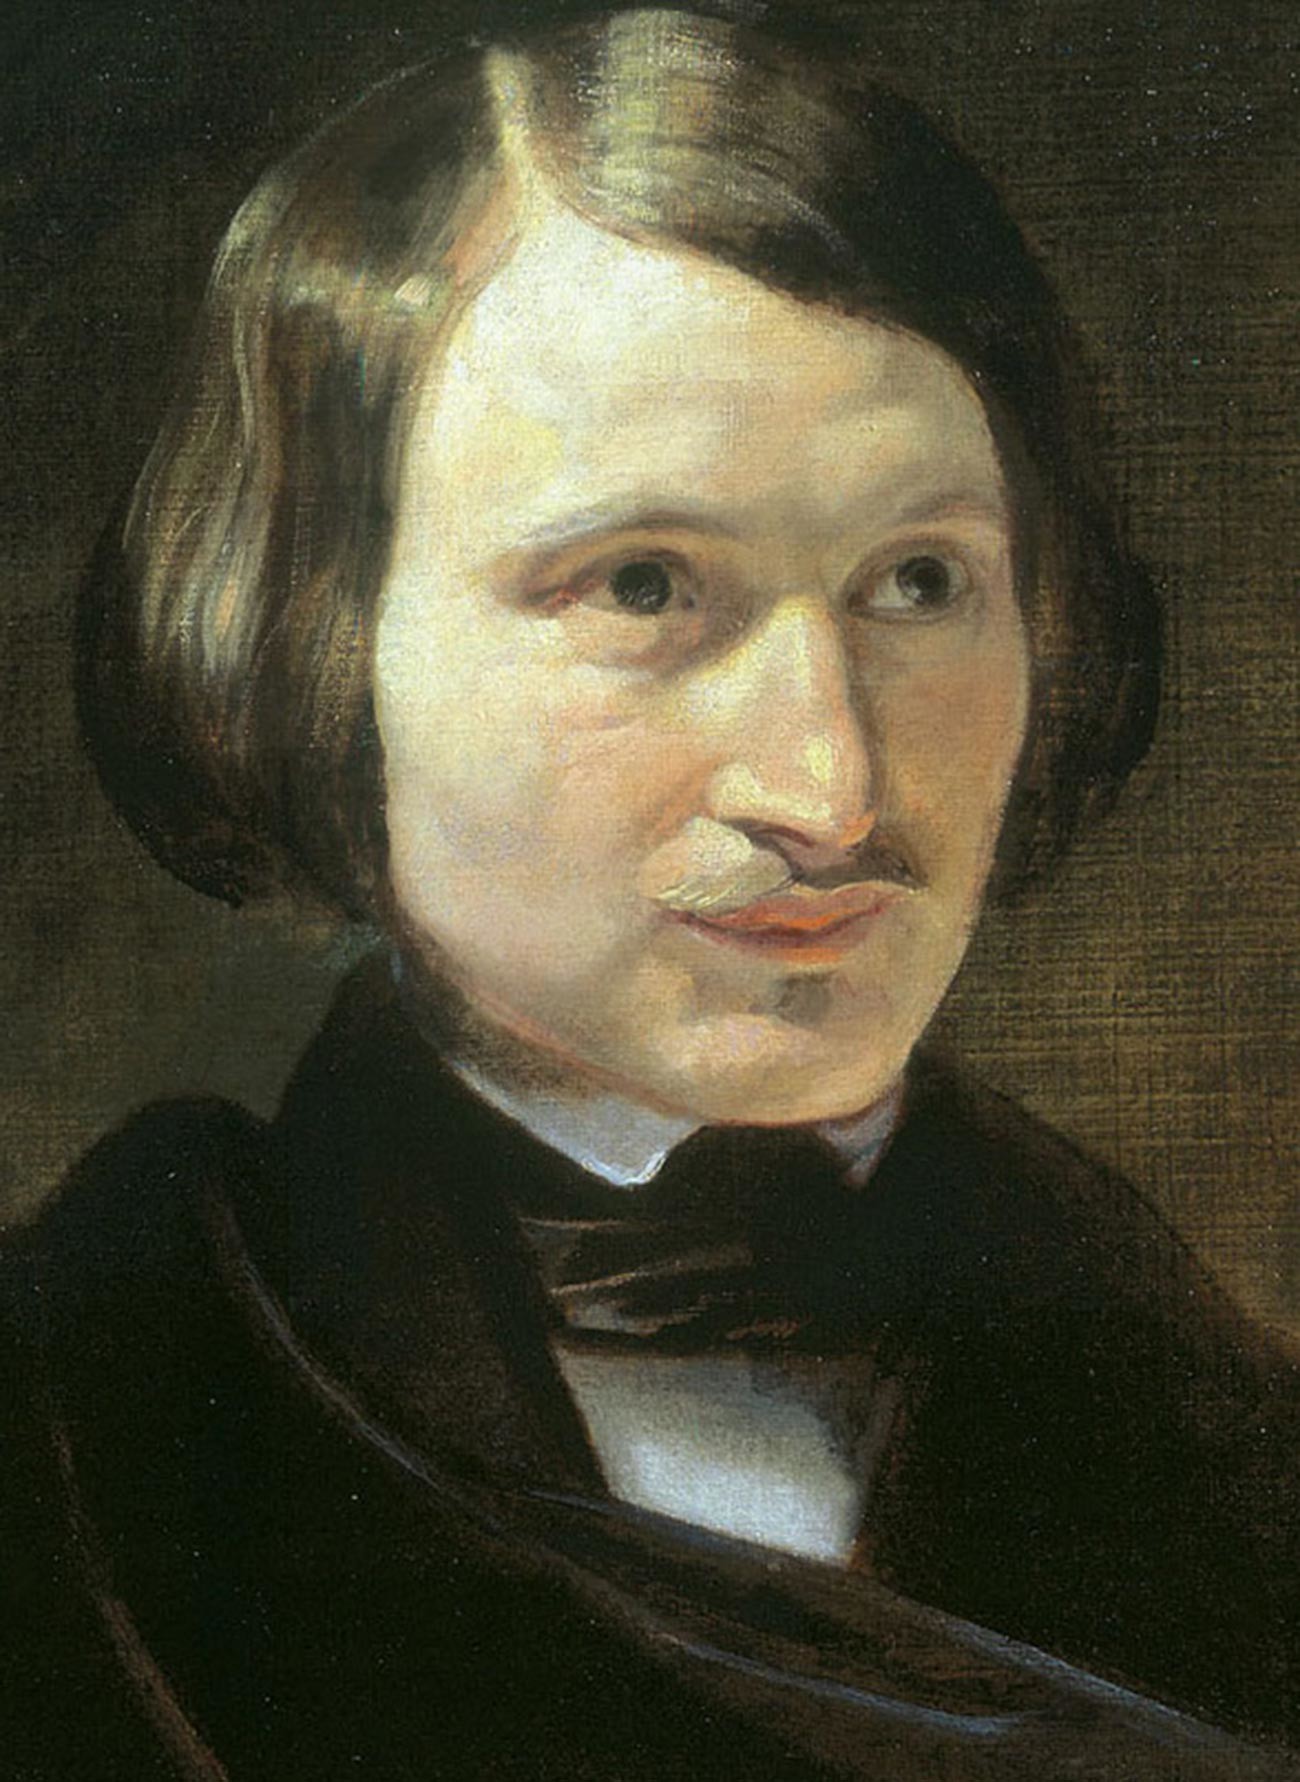 Portrait of Nikolai Gogol, by Otto Friedrich Theodor von Möller.